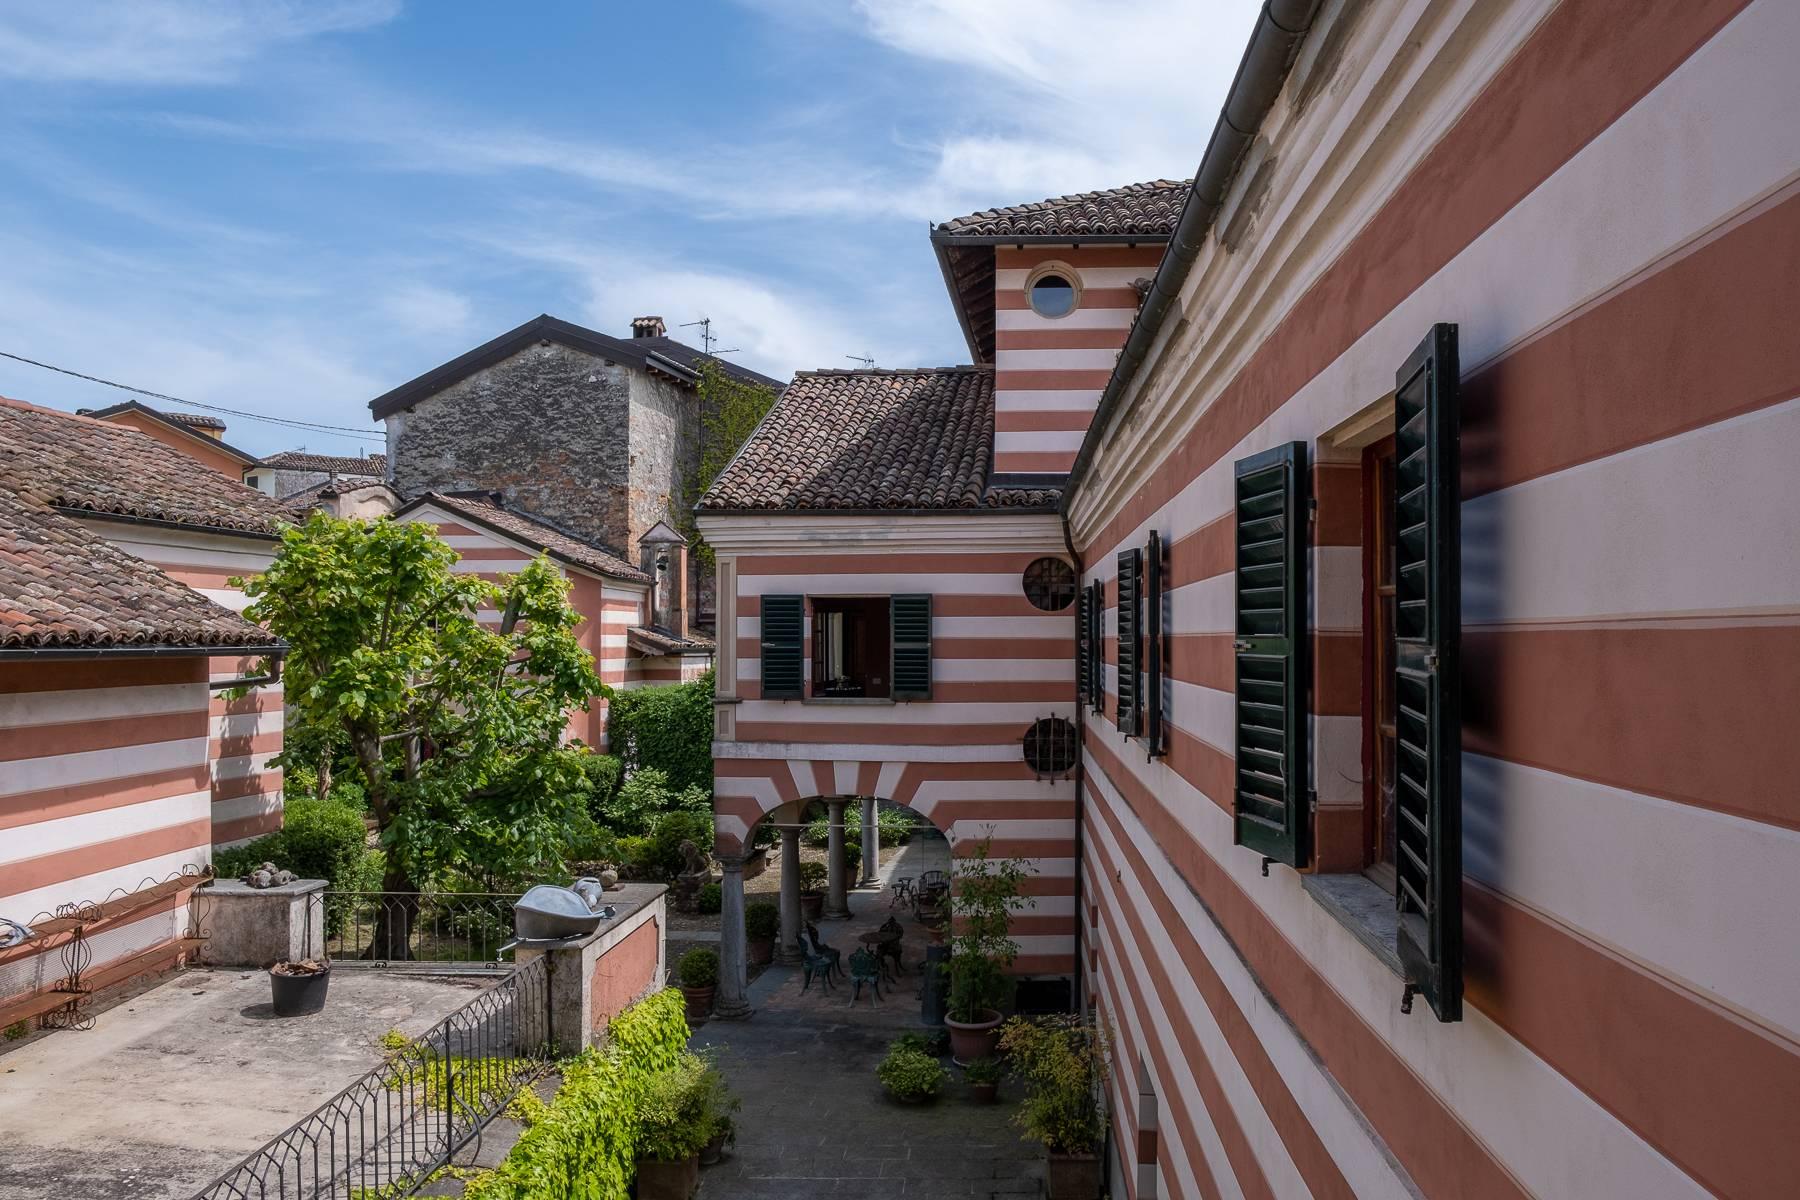 Affascinante residenza storica in borgo medievale dell'alto Monferrato - 32